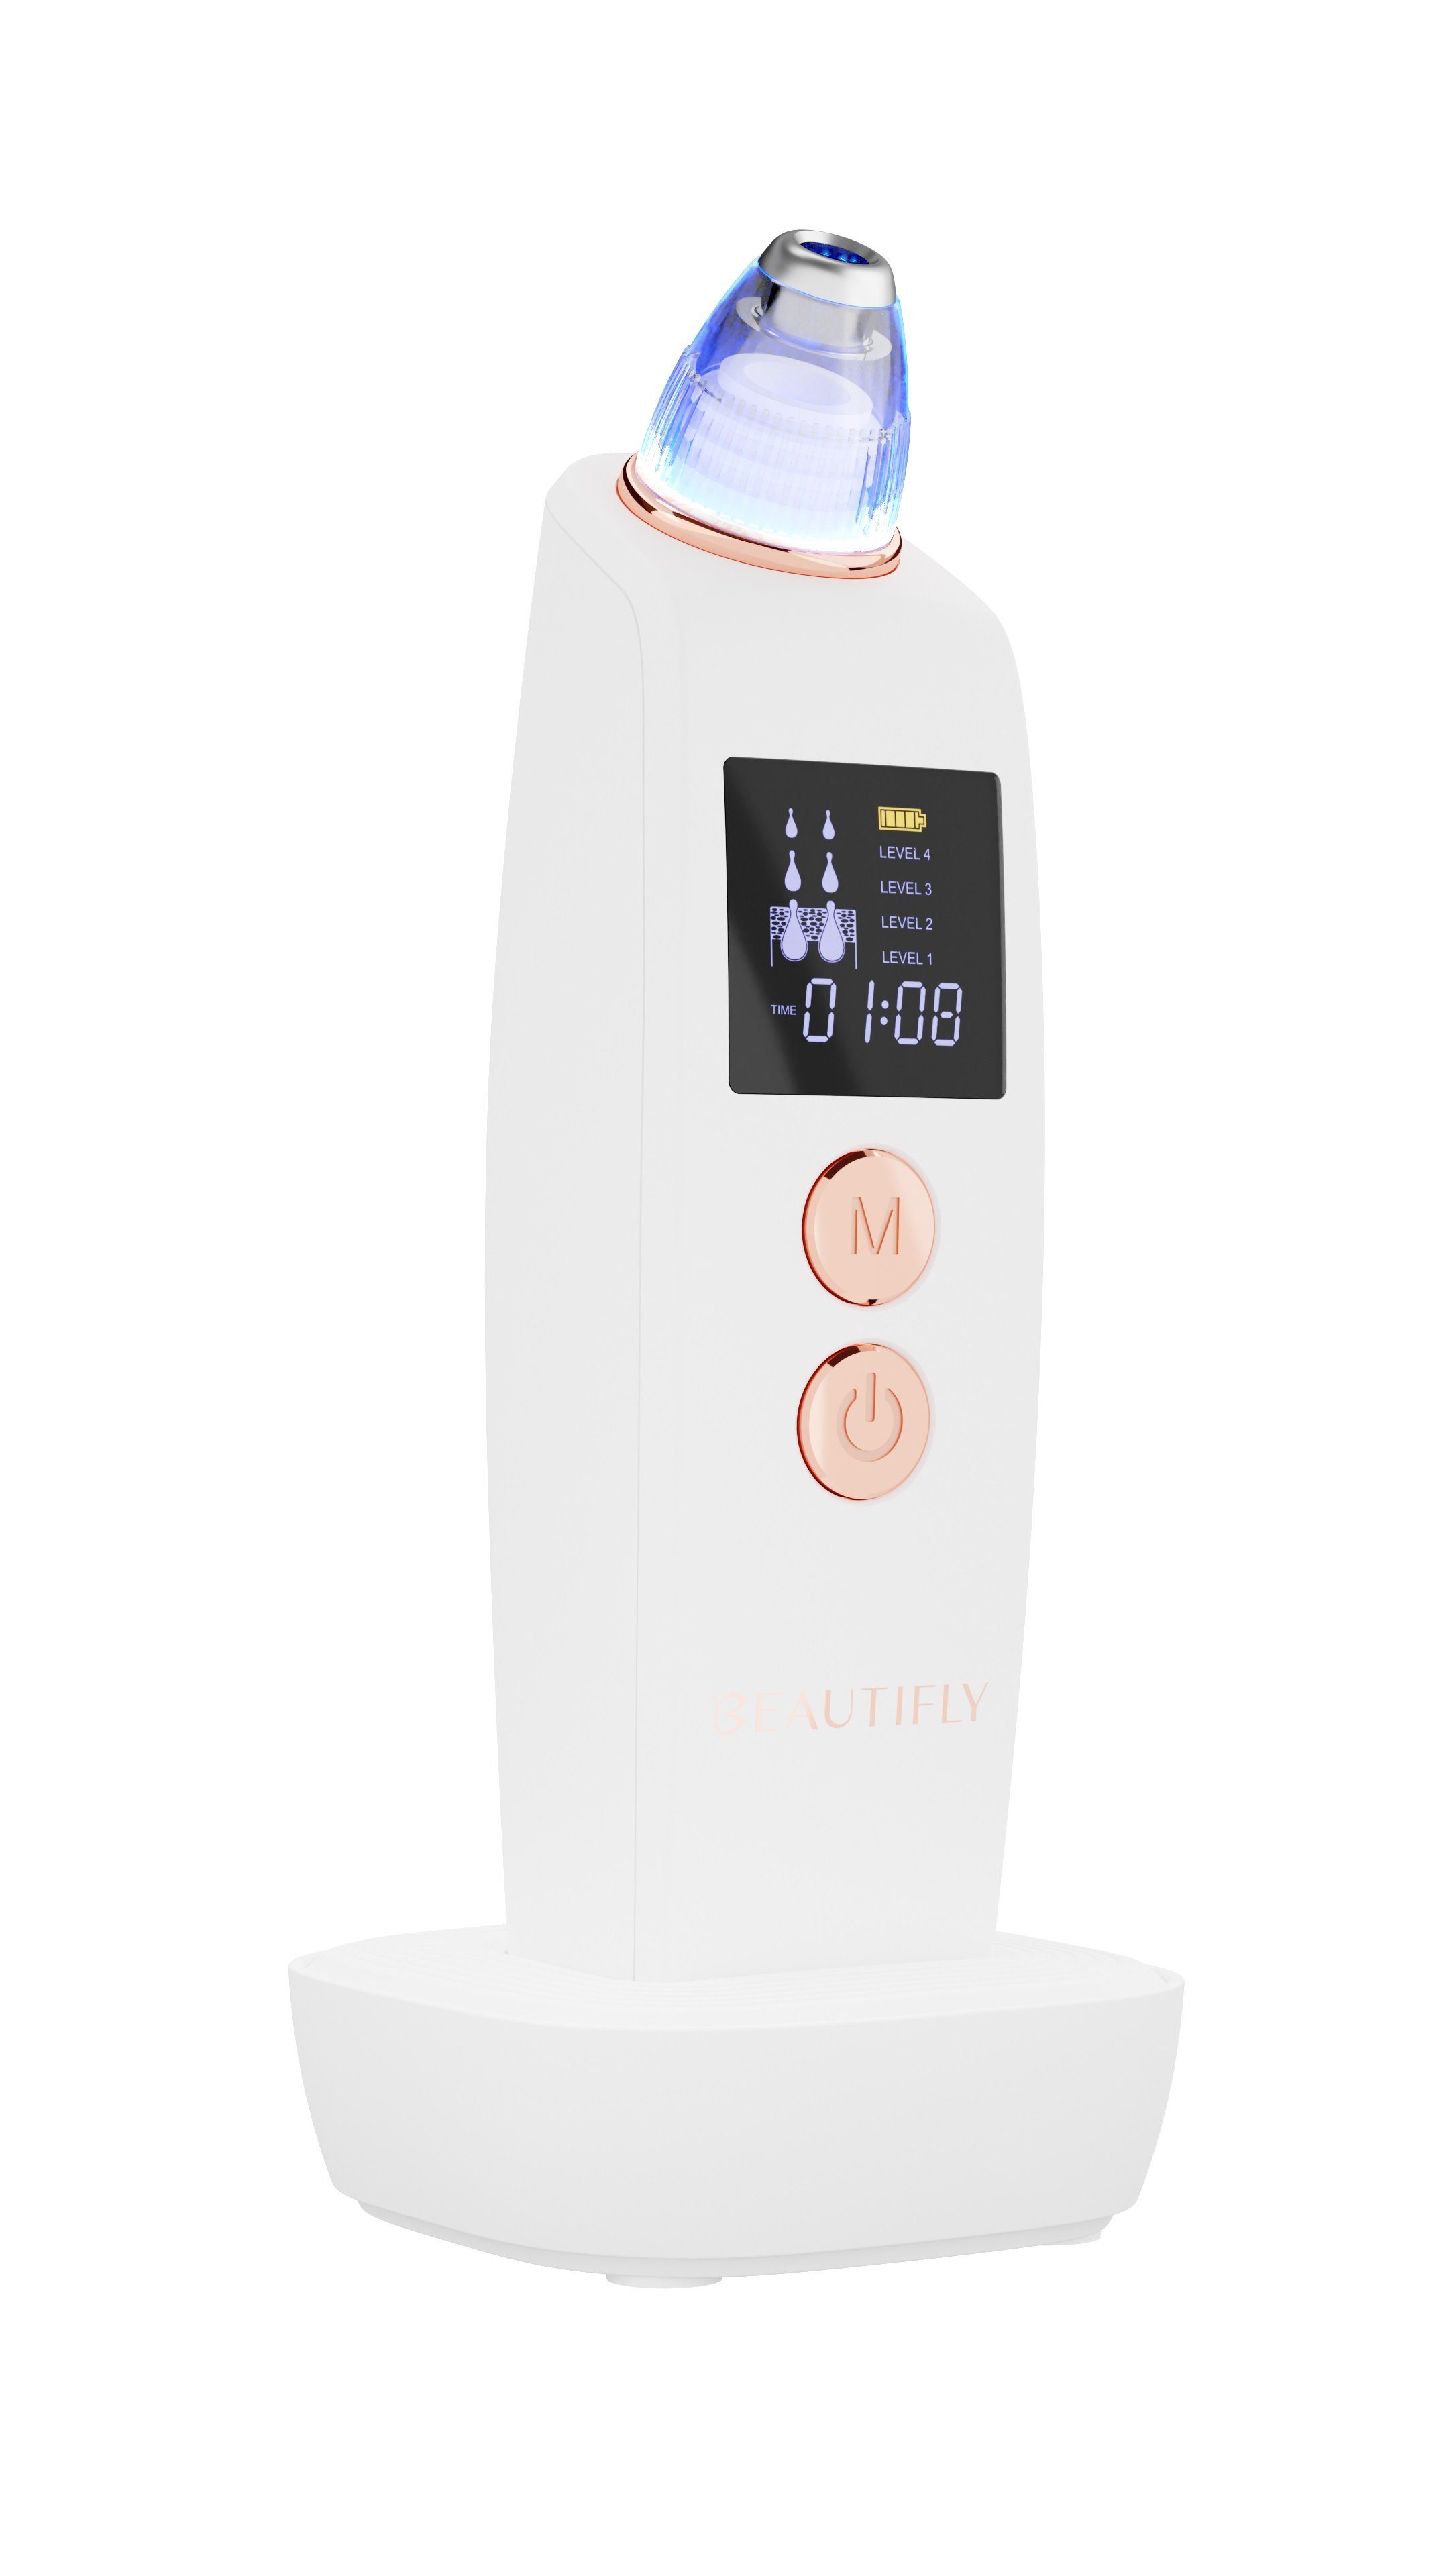 B-DERMA-PRO Gesichtsreinigungsbürste Elektrische Ultraschall mit Beautifly